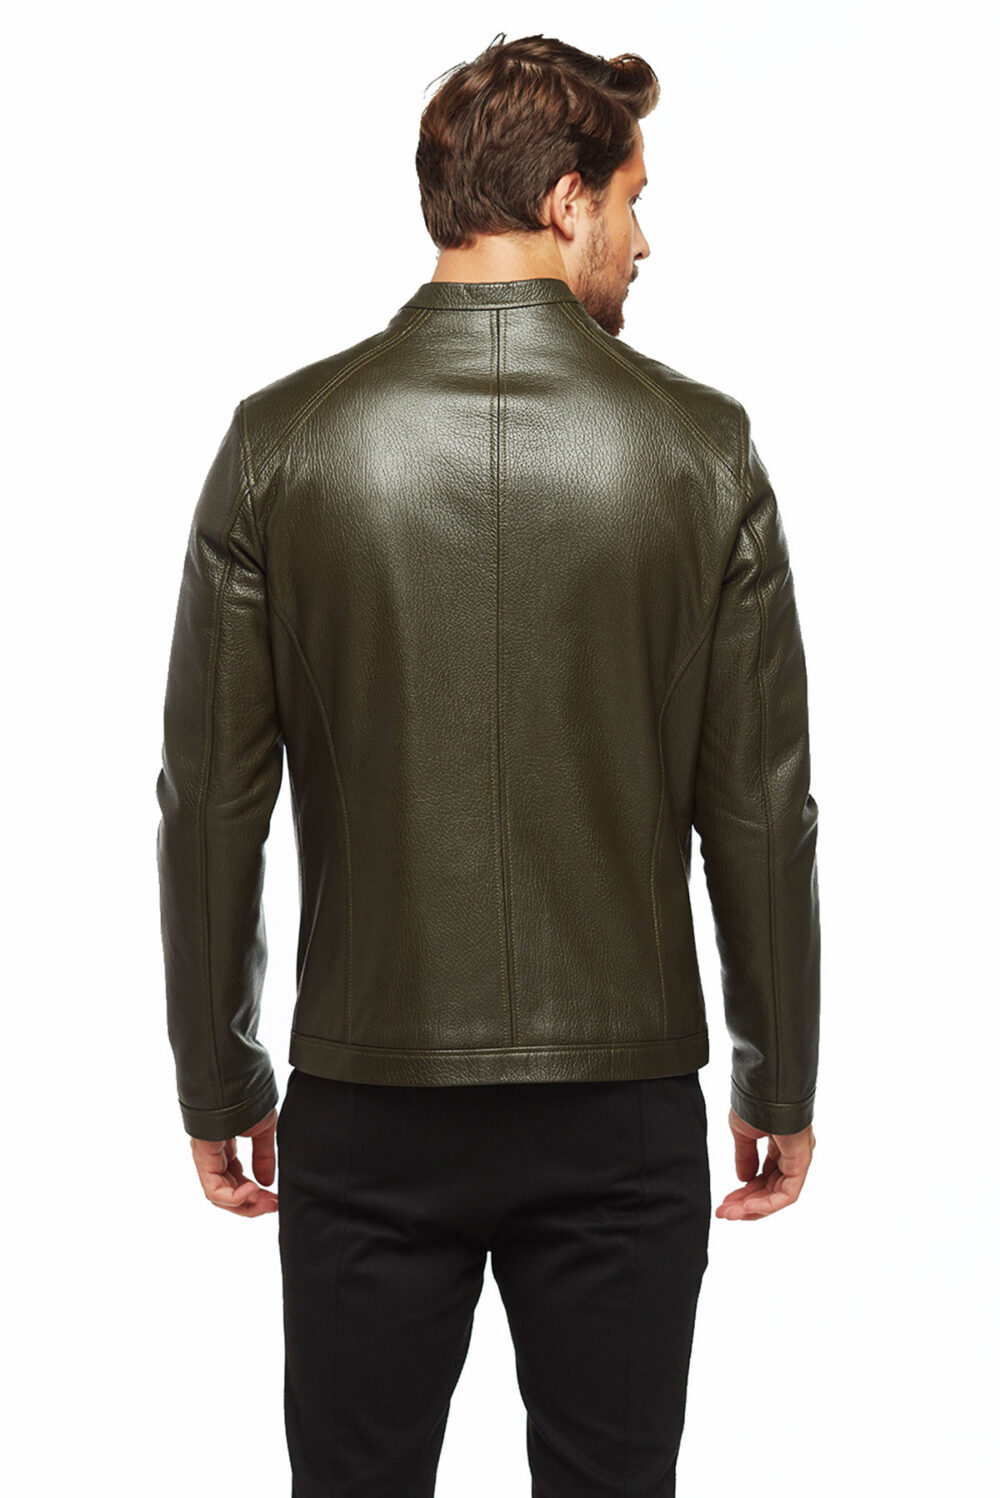 Argen New Zeland Olive Green Leather Jacket